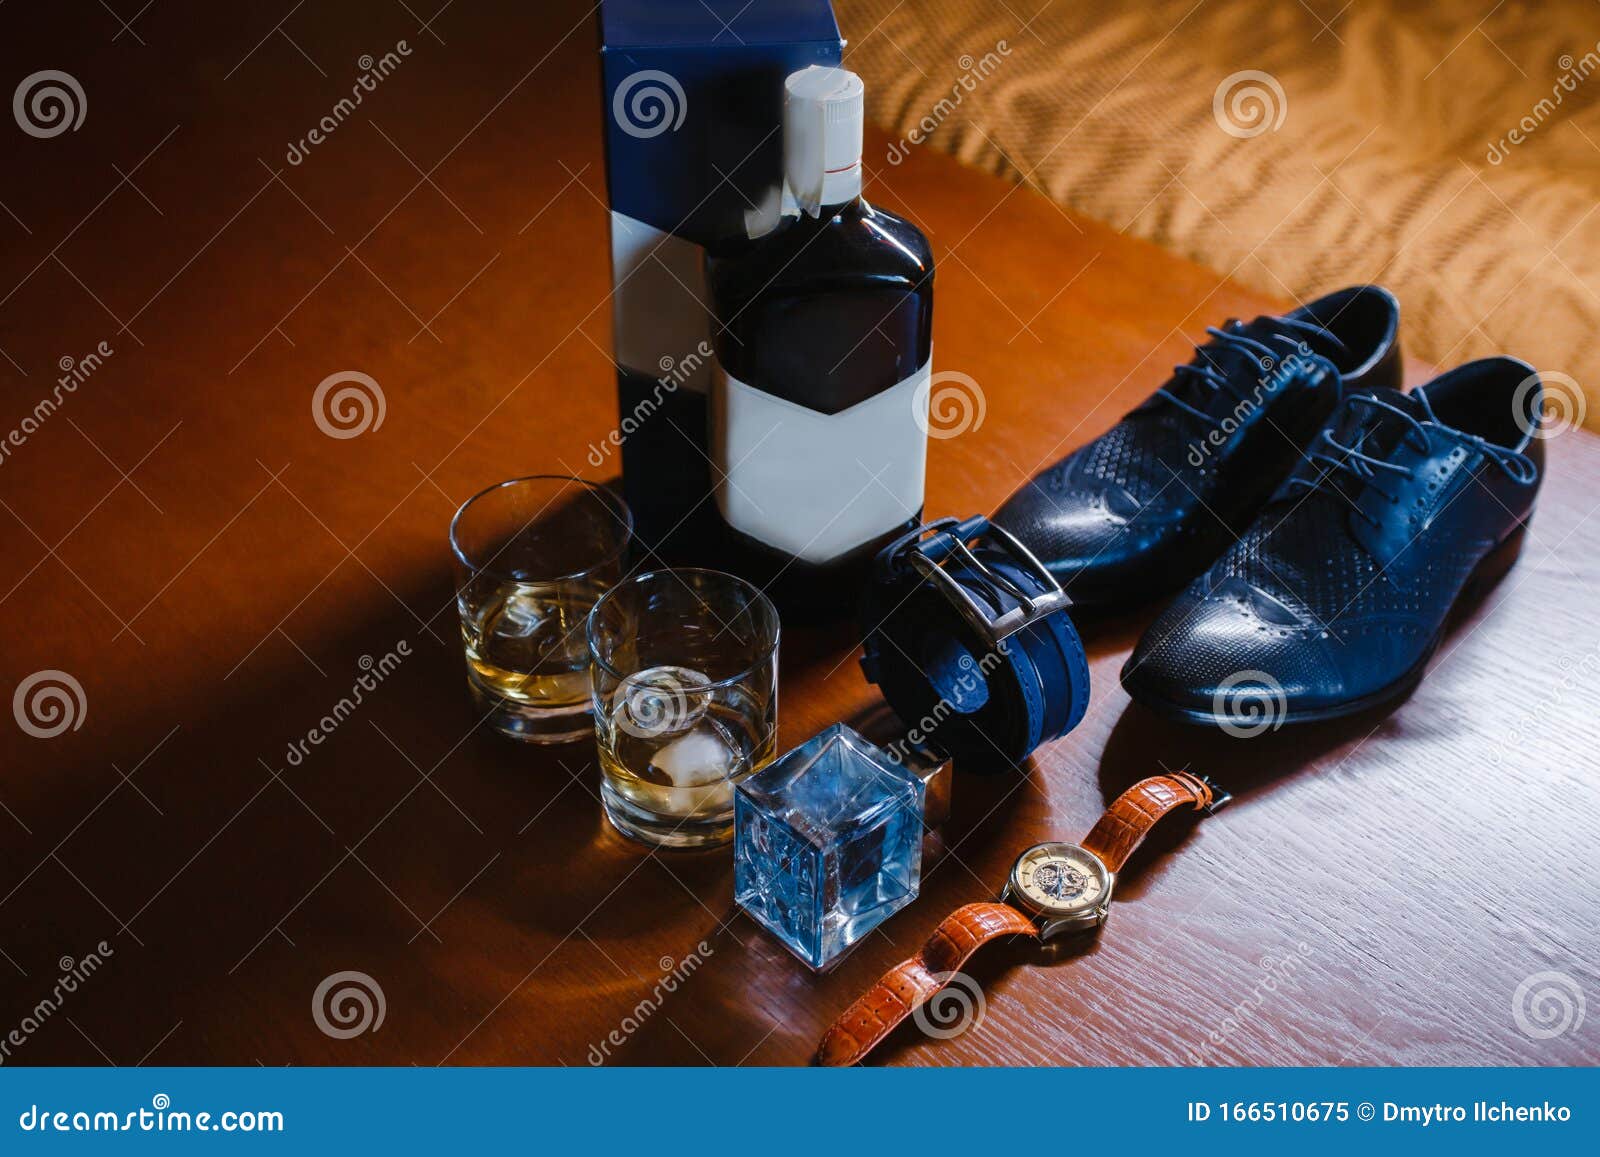 Gebühr: Männerschuhe, Ein Mit Einem Ring Aufgerollter Gürtel, Uhren,  Kölnchen, Eine Flasche Alkohol, Zwei Gläser Mit Alkohol Und Stockbild -  Bild von geschenk, duftstoff: 166510675